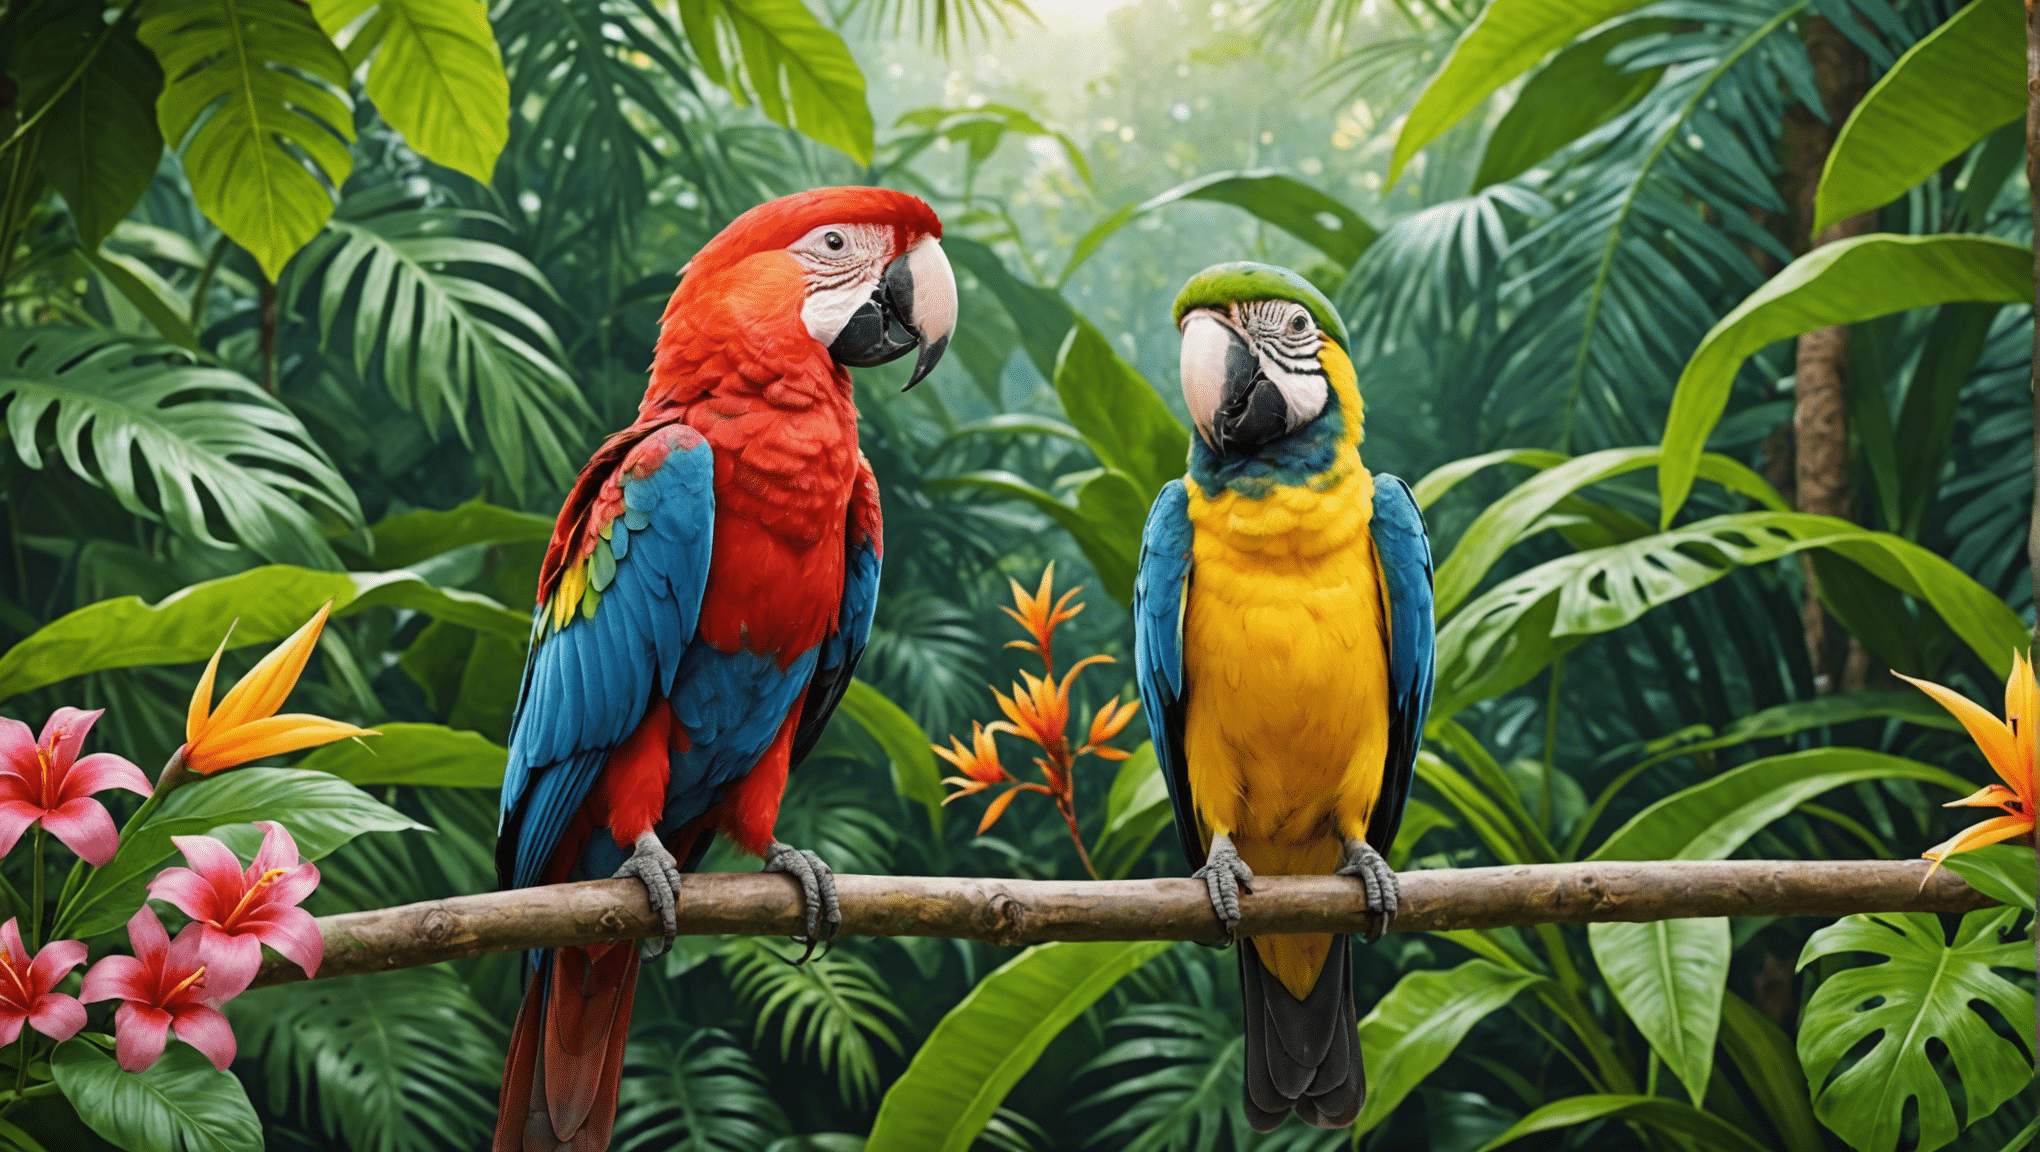 odkryj czarujący świat tropikalnych ptaków dzięki naszej fascynującej kolekcji artykułów i zdjęć.